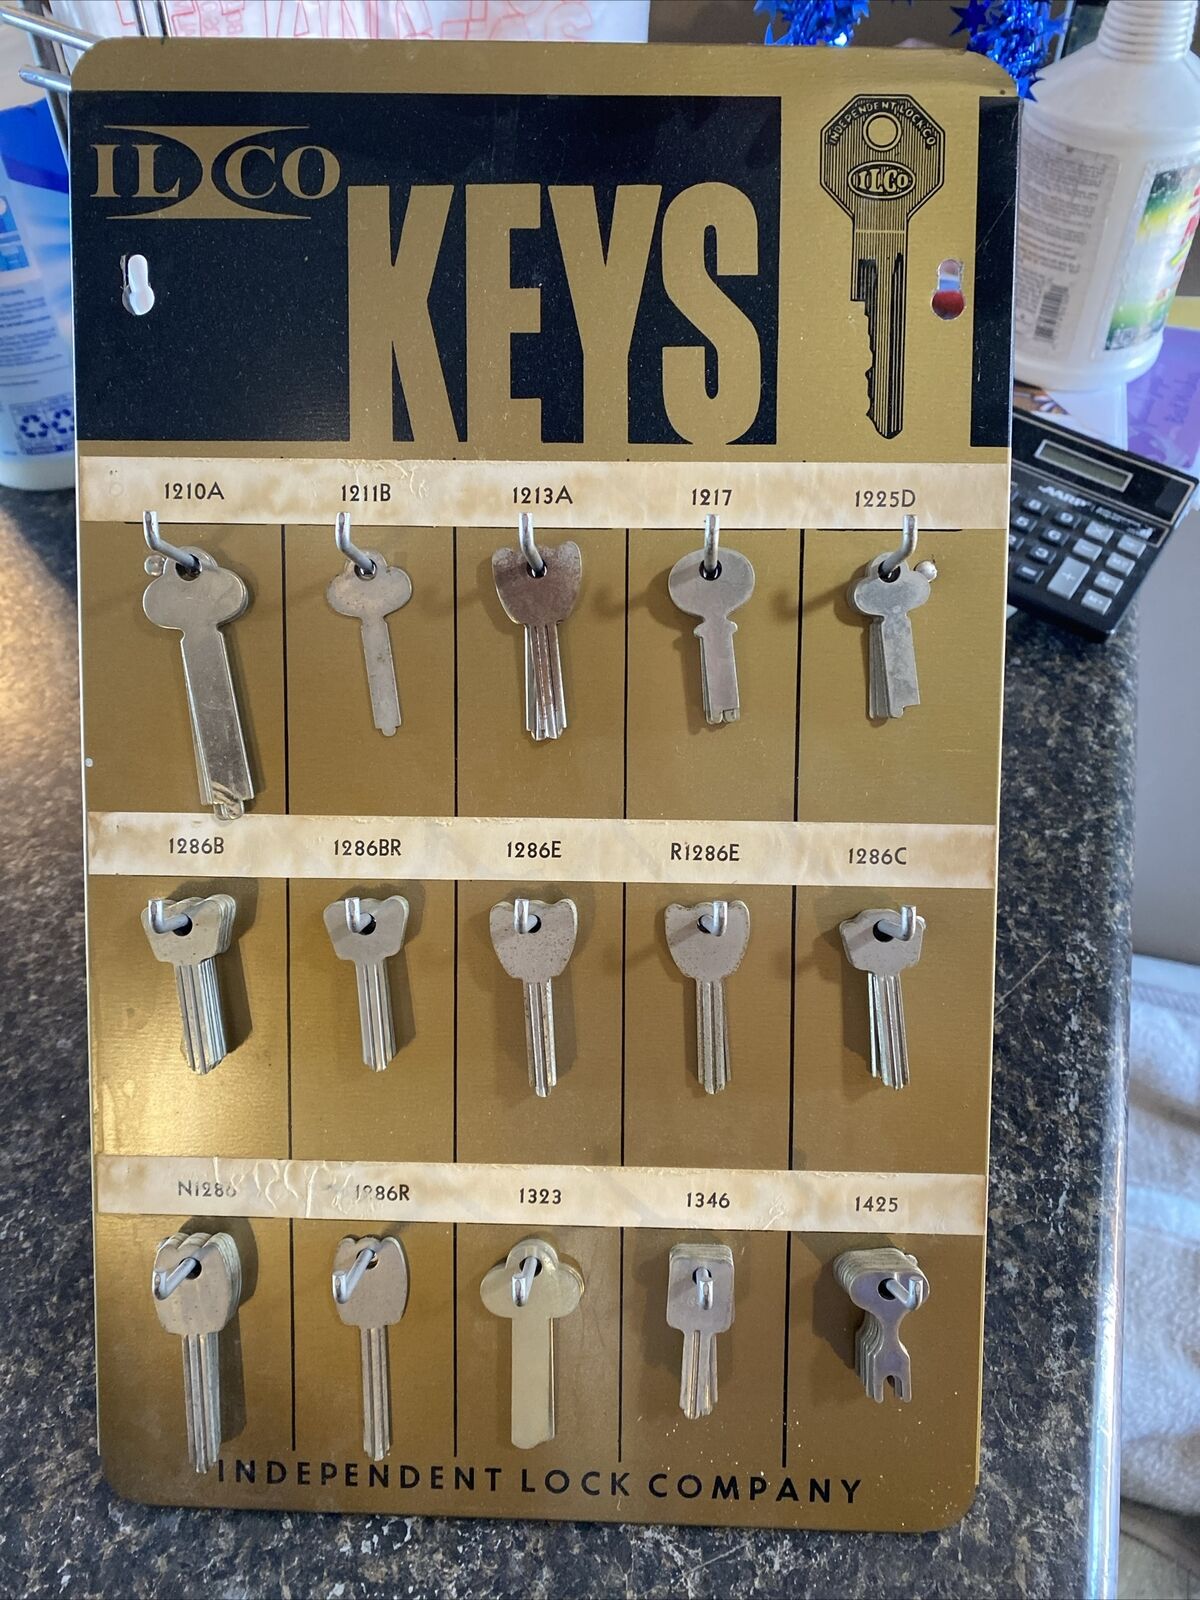 Vintage Ilco Keys Display With Keys 